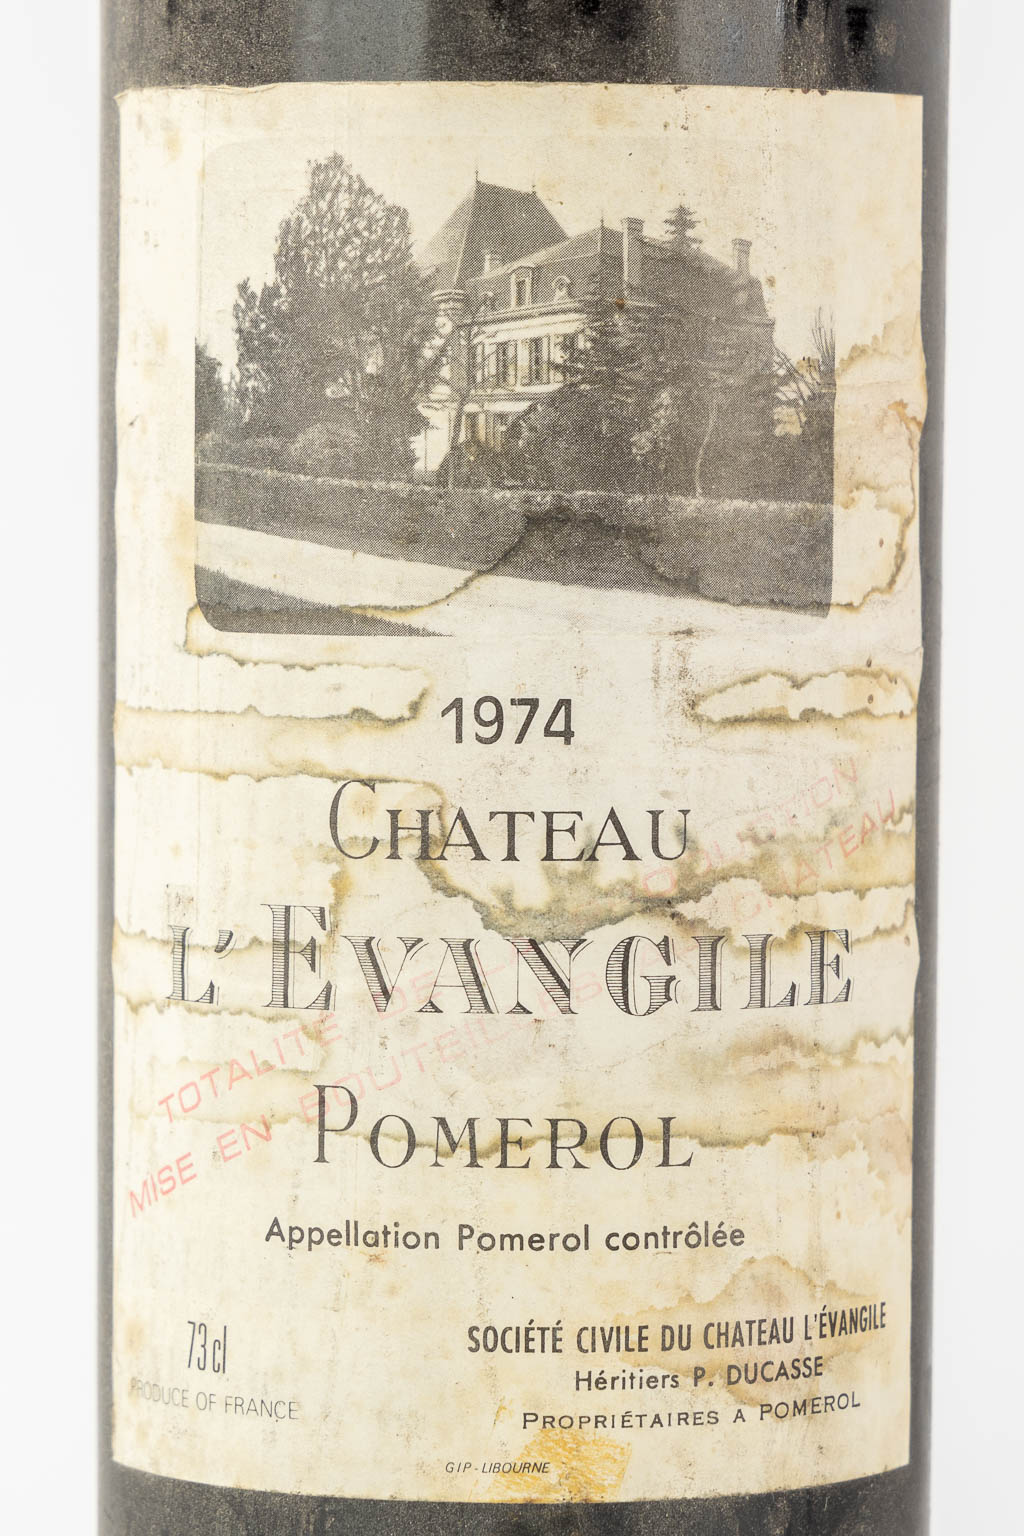 6 bottles wine, Chateau l' Evangile, Chateau Margaux, Chateau Troplong Mondot en 3 bottles sauternes - Image 6 of 9